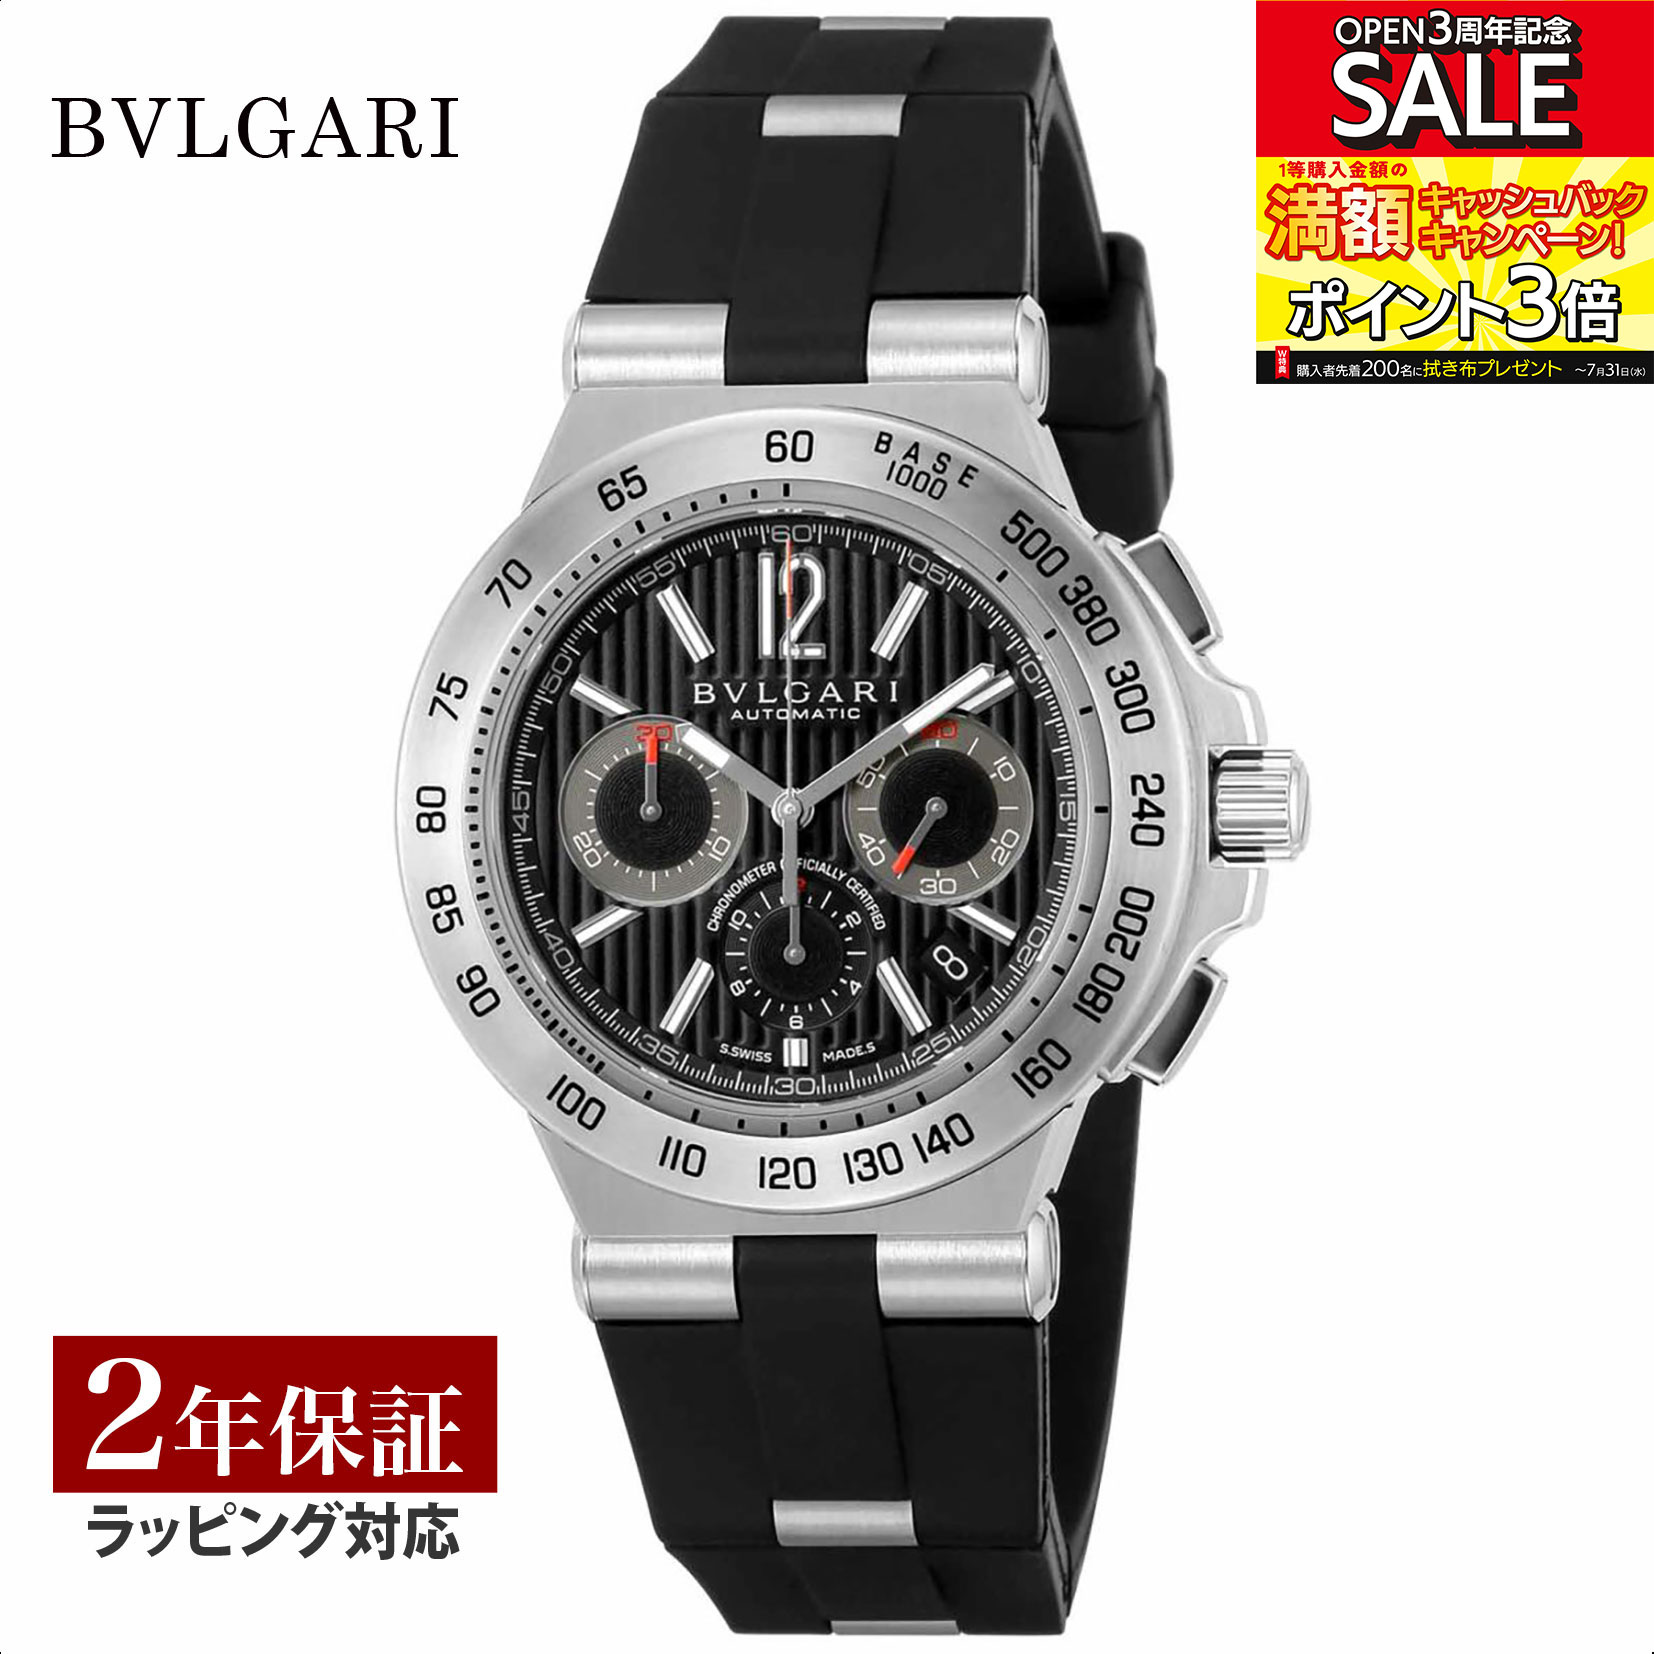 【レビューでブルガリランチ券】ブルガリ BVLGARI メンズ 時計 Diagono ディアゴノ 自動巻 ブラック DP42BSVDCH 時計 腕時計 高級腕時計 ブランド 【ローン金利無料】